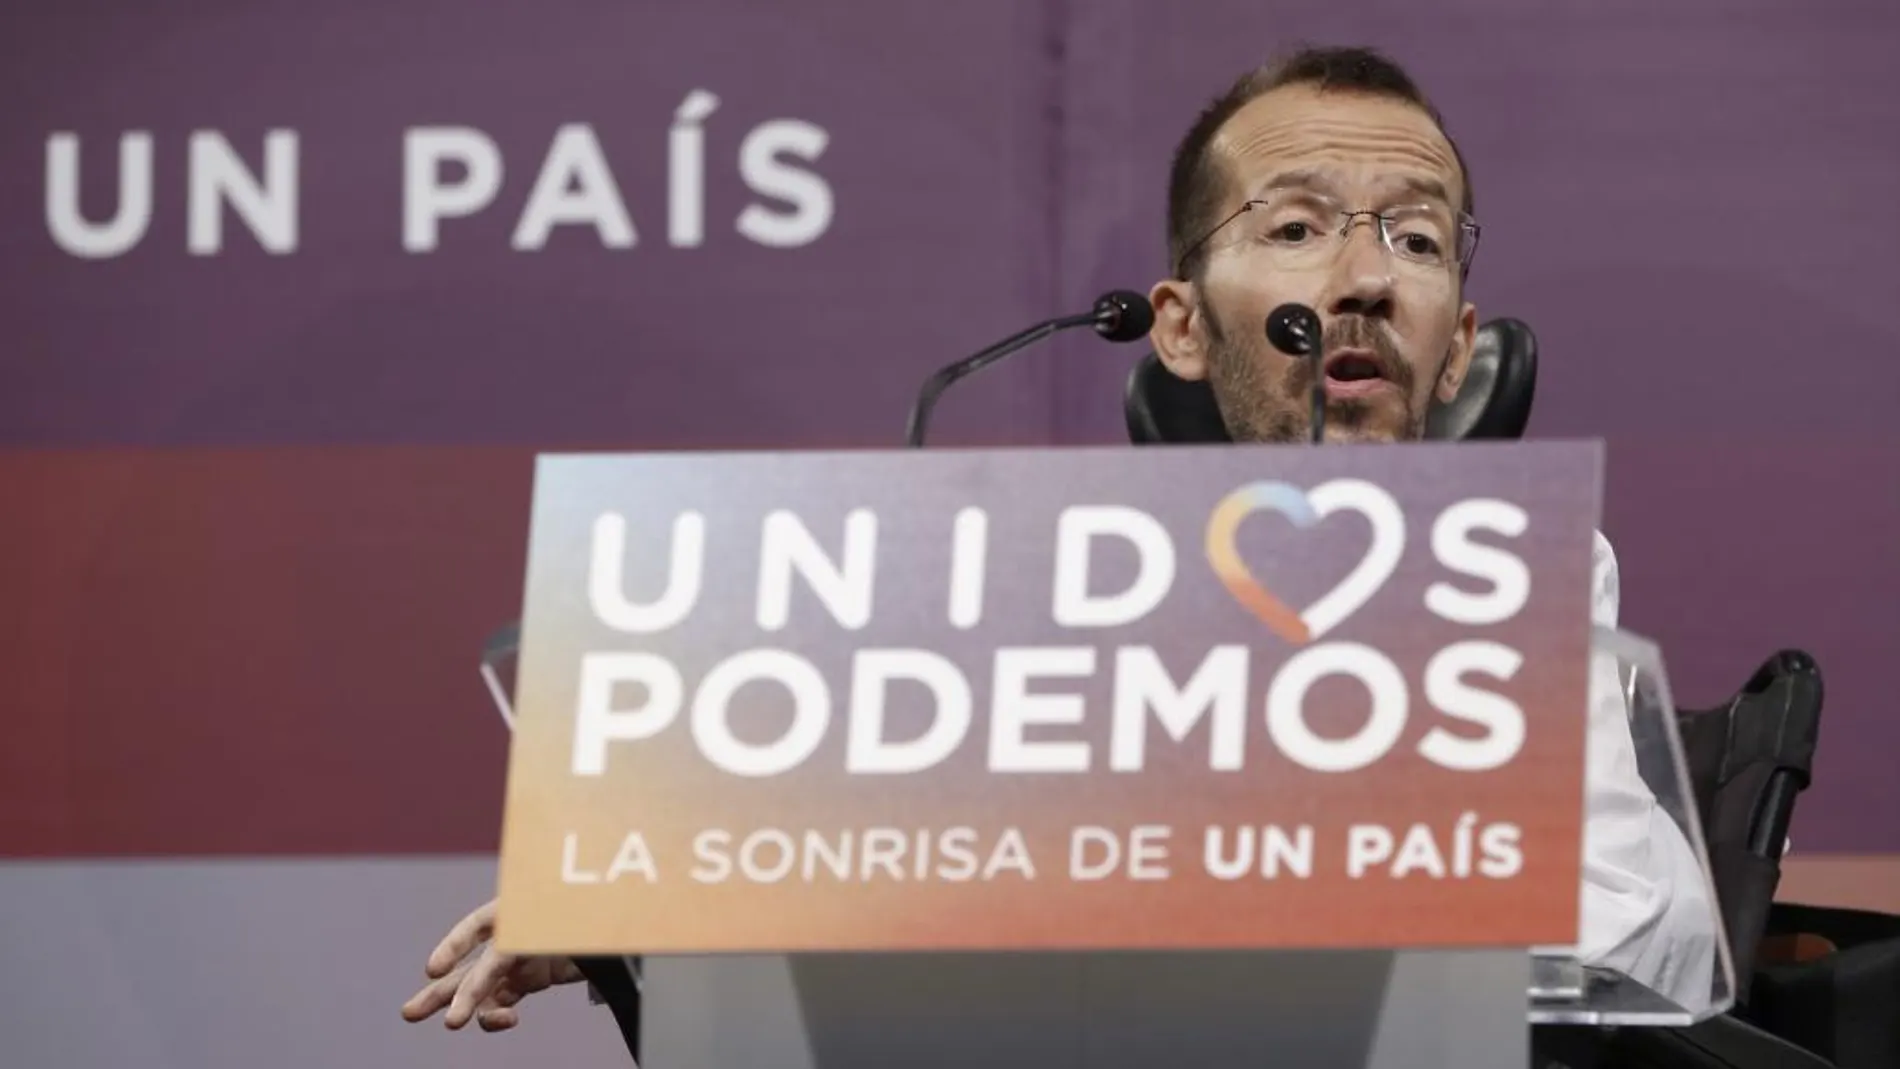 El secretario de Organización de Podemos, Pablo Echenique